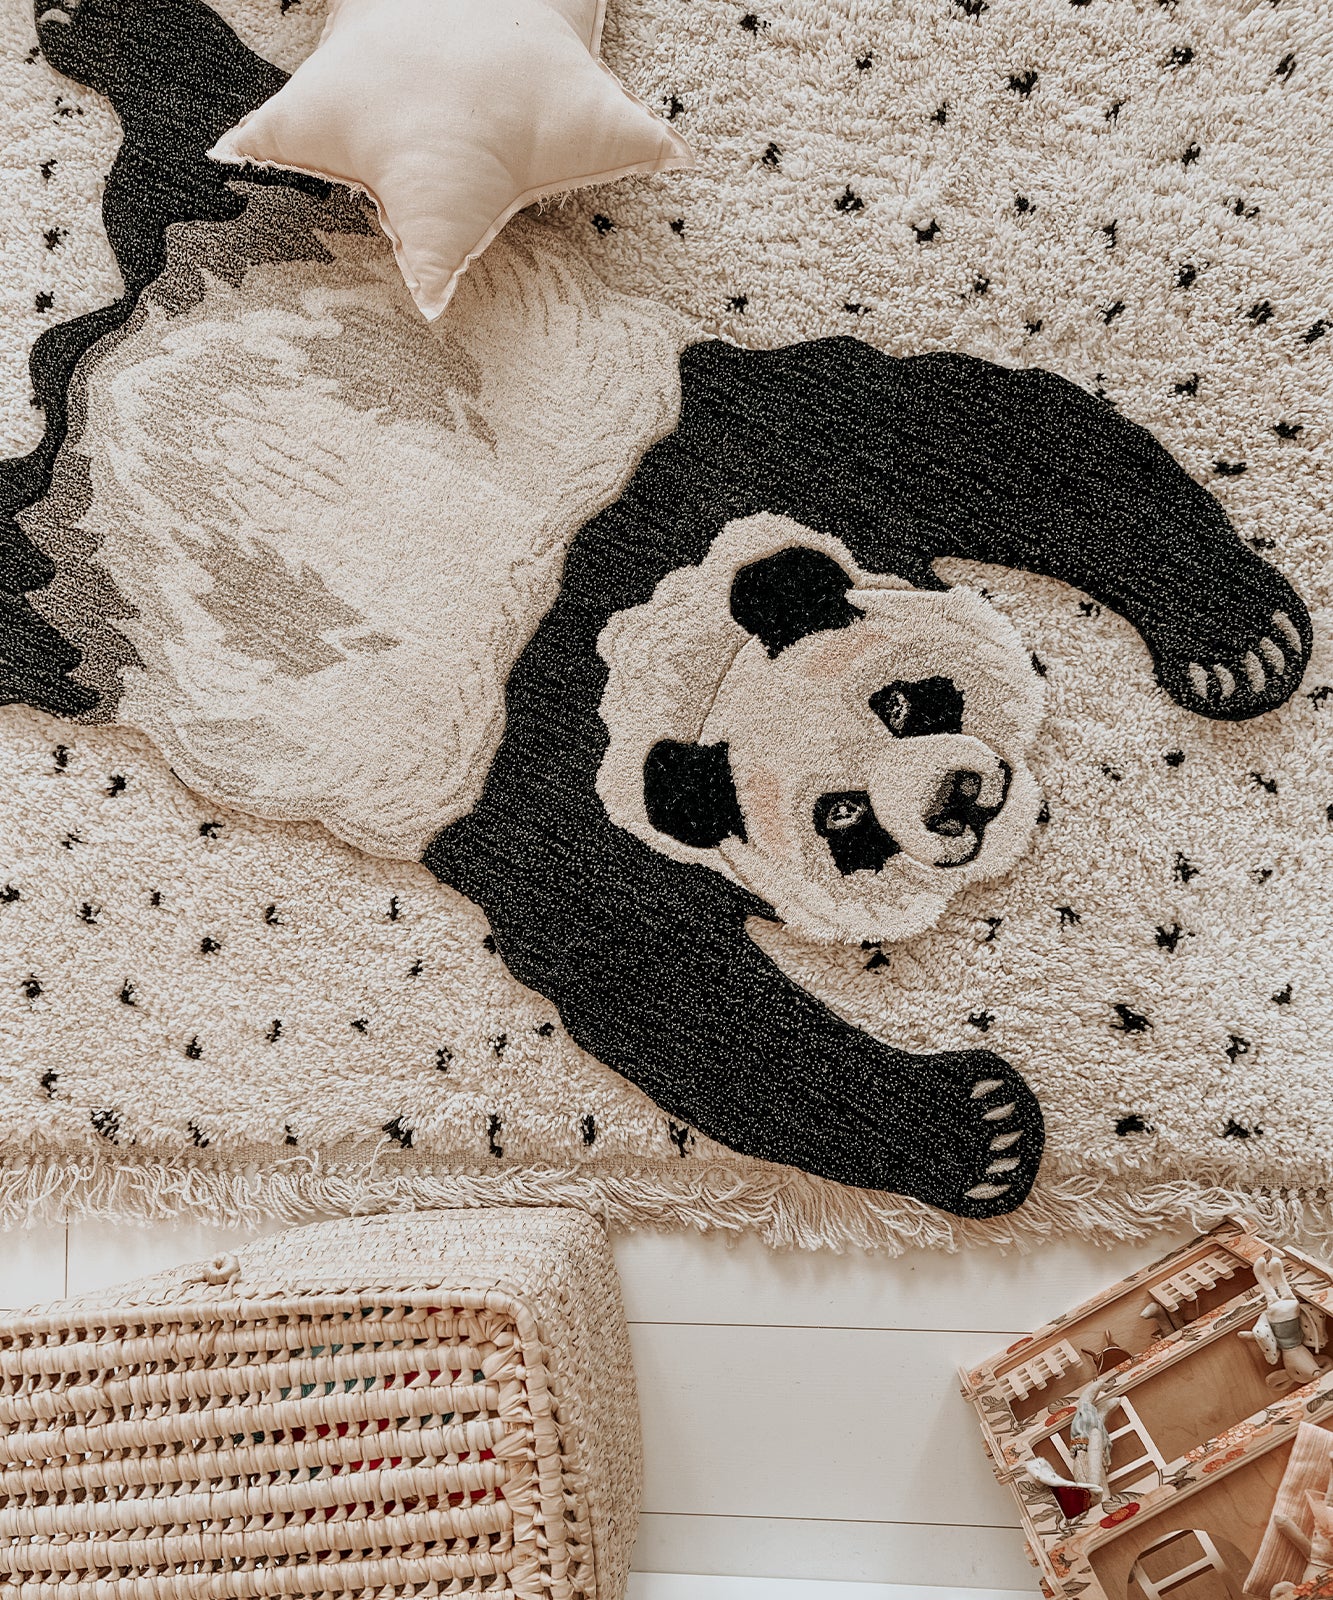 plumpy-panda-rug-small-doing-goods-sh-1-1.45.10.051.020.3-web.jpg